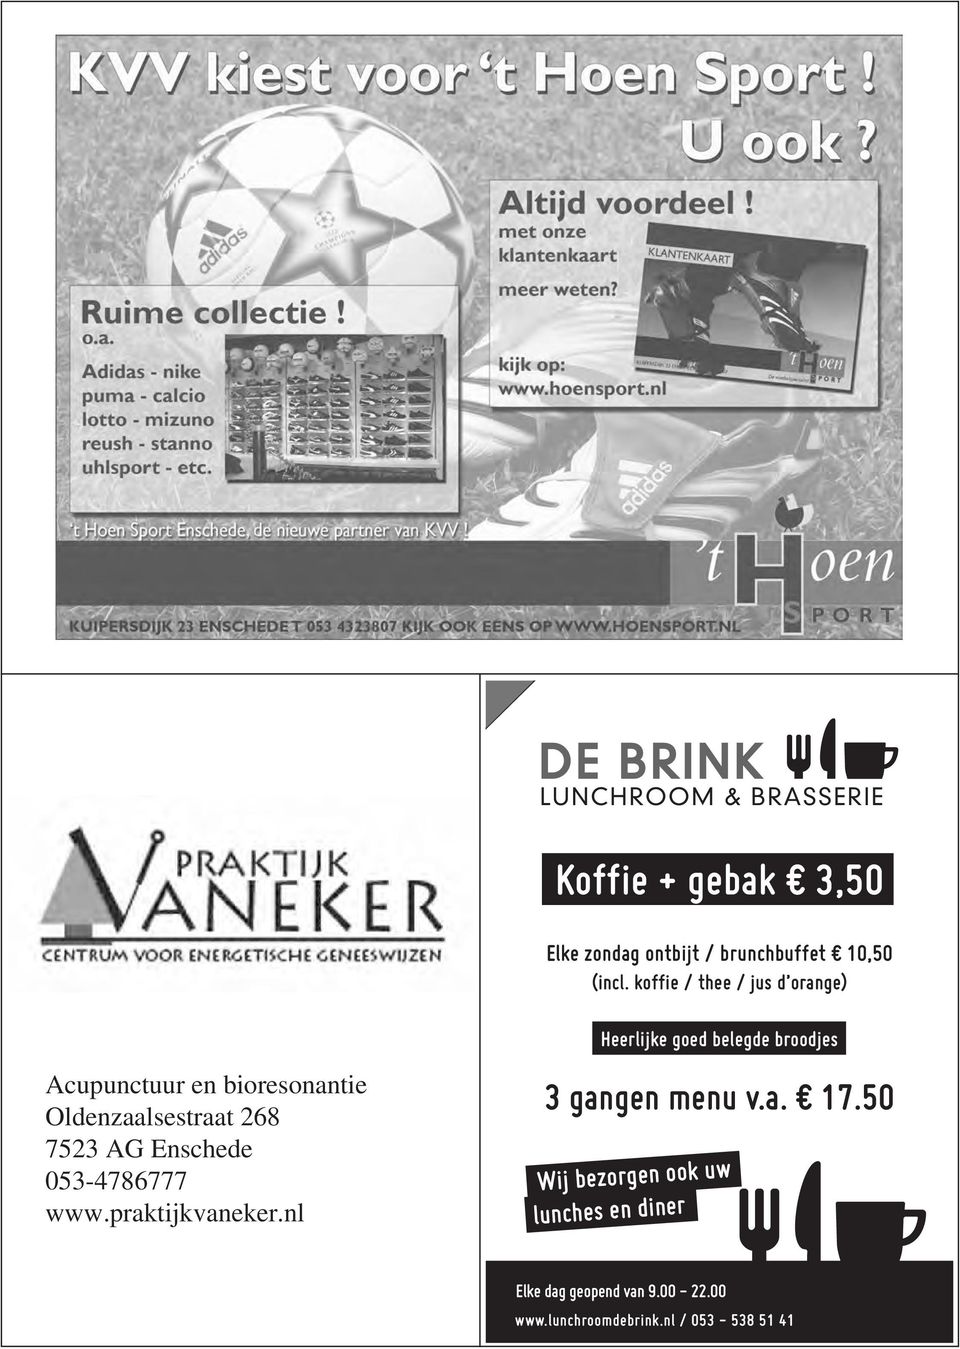 Oldenzaalsestraat 268 7523 AG Enschede 053-4786777 www.praktijkvaneker.nl 3 gangen menu v.a. 17.